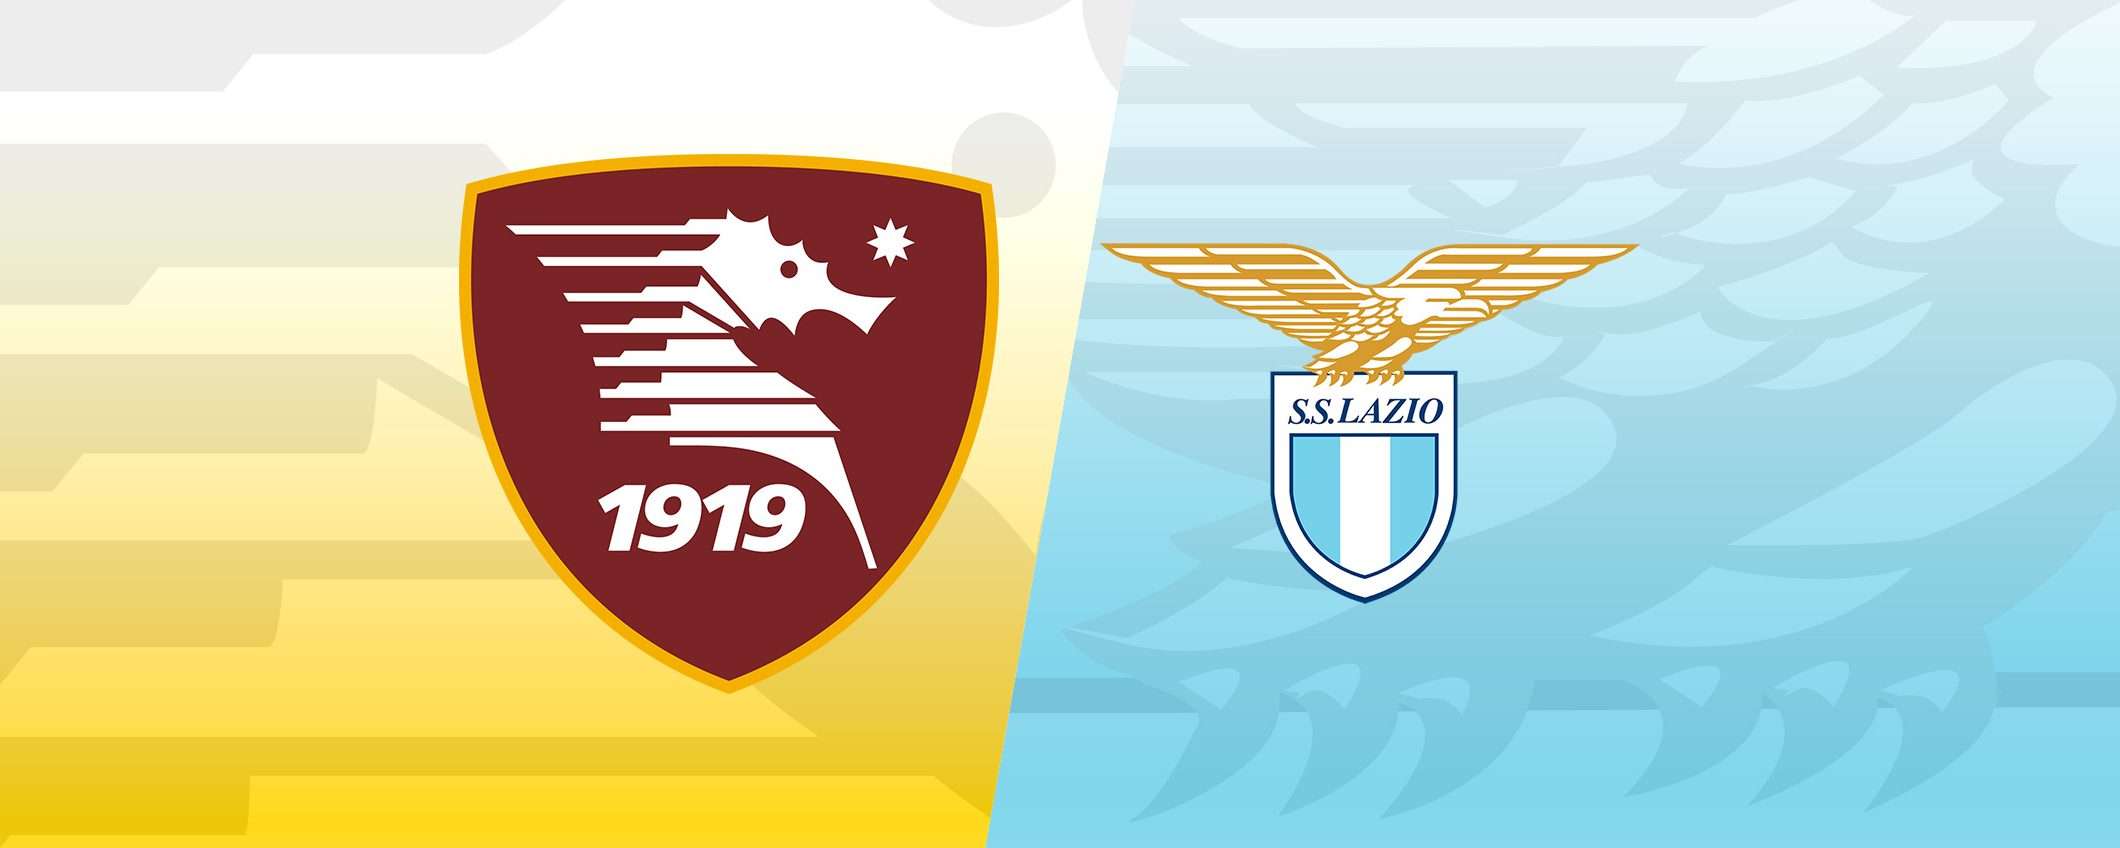 Come vedere Salernitana-Lazio in streaming (Serie A)